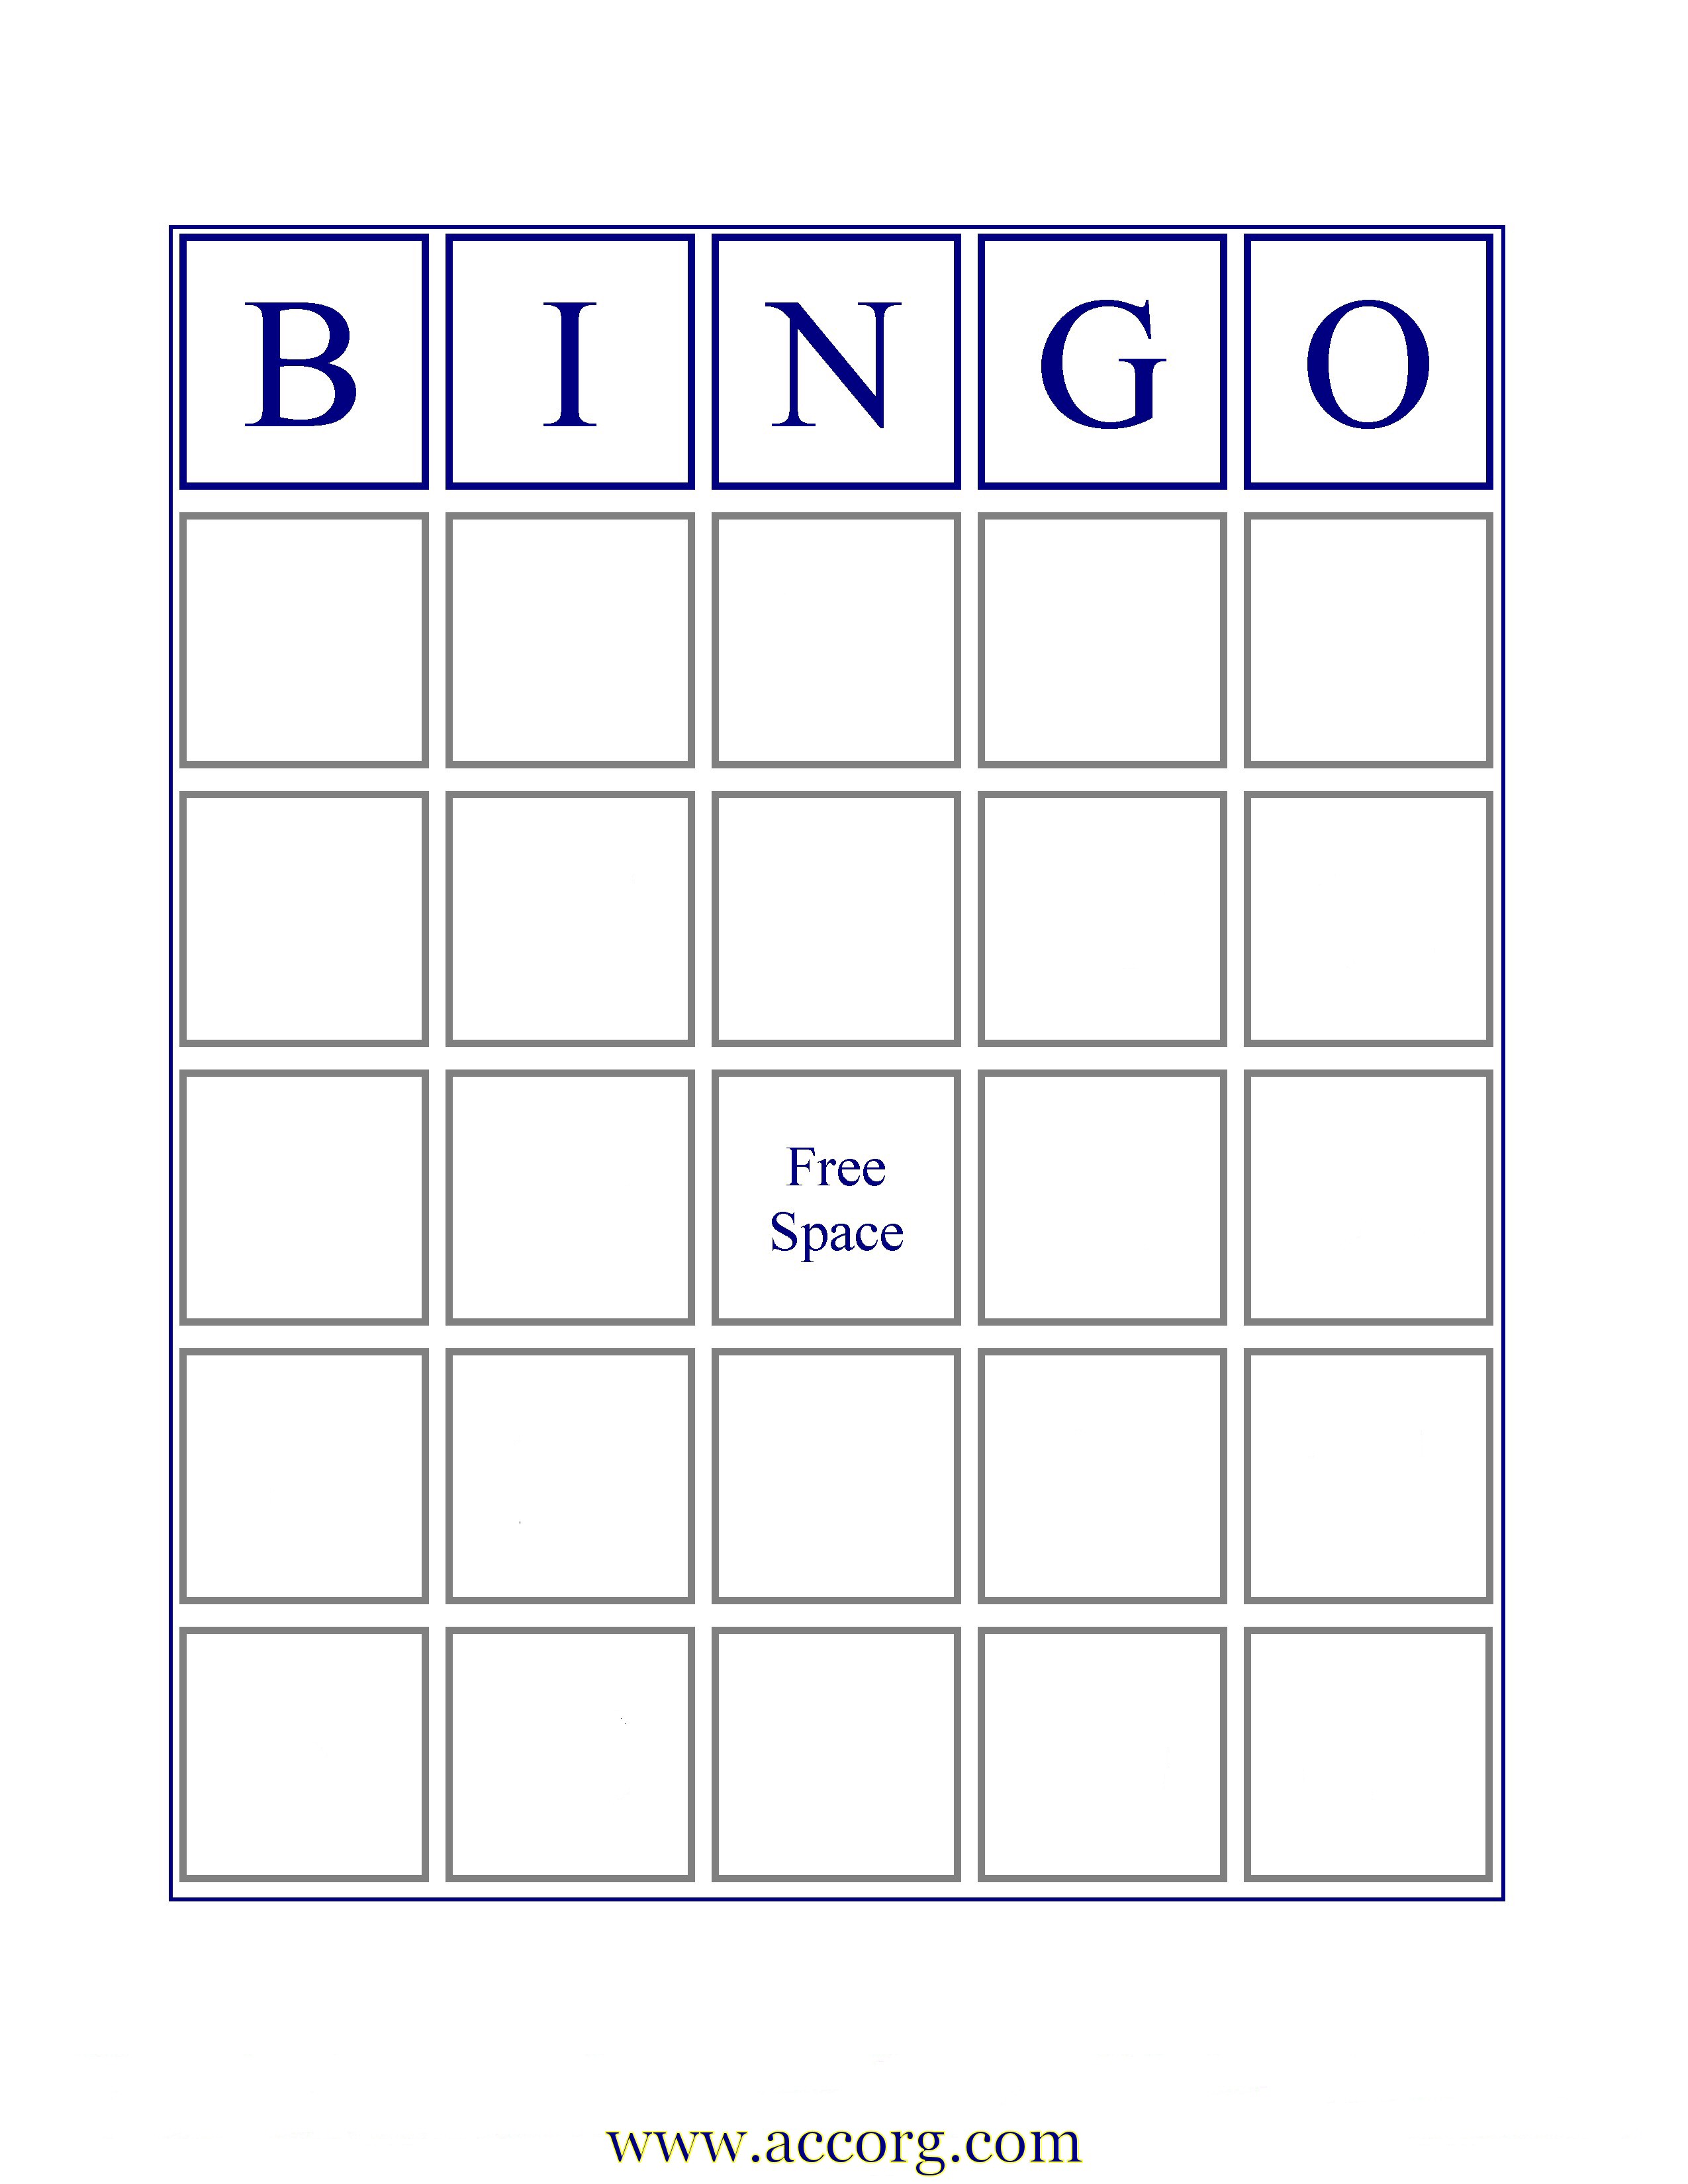 7 Best Images of Printable Blank Bingo Sheets Free Printable Blank